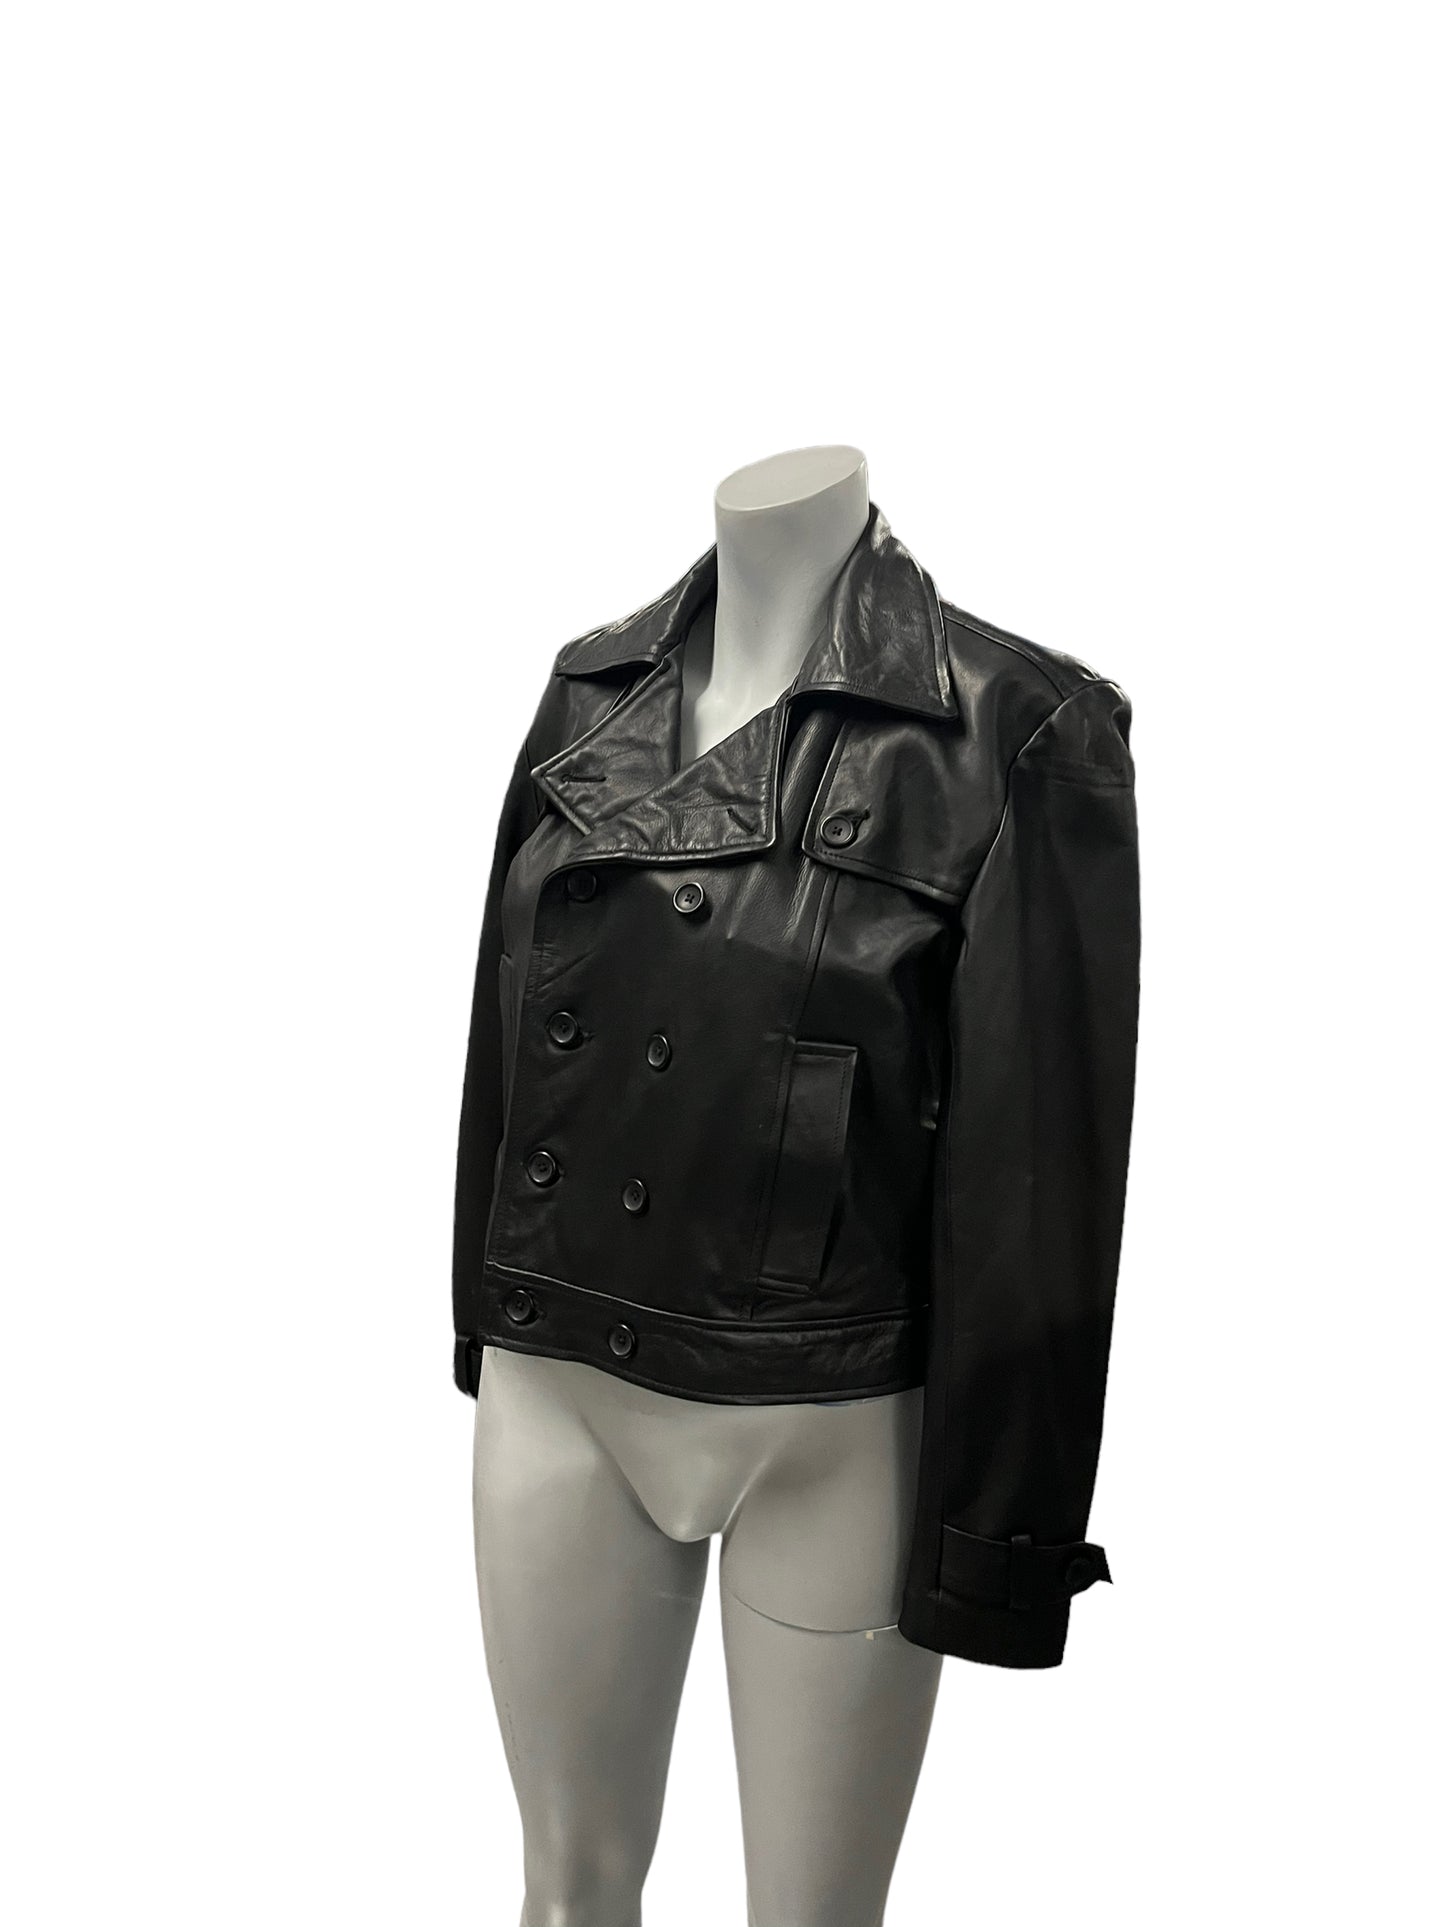 Fashion World - LL155 - Black Leather Jacket